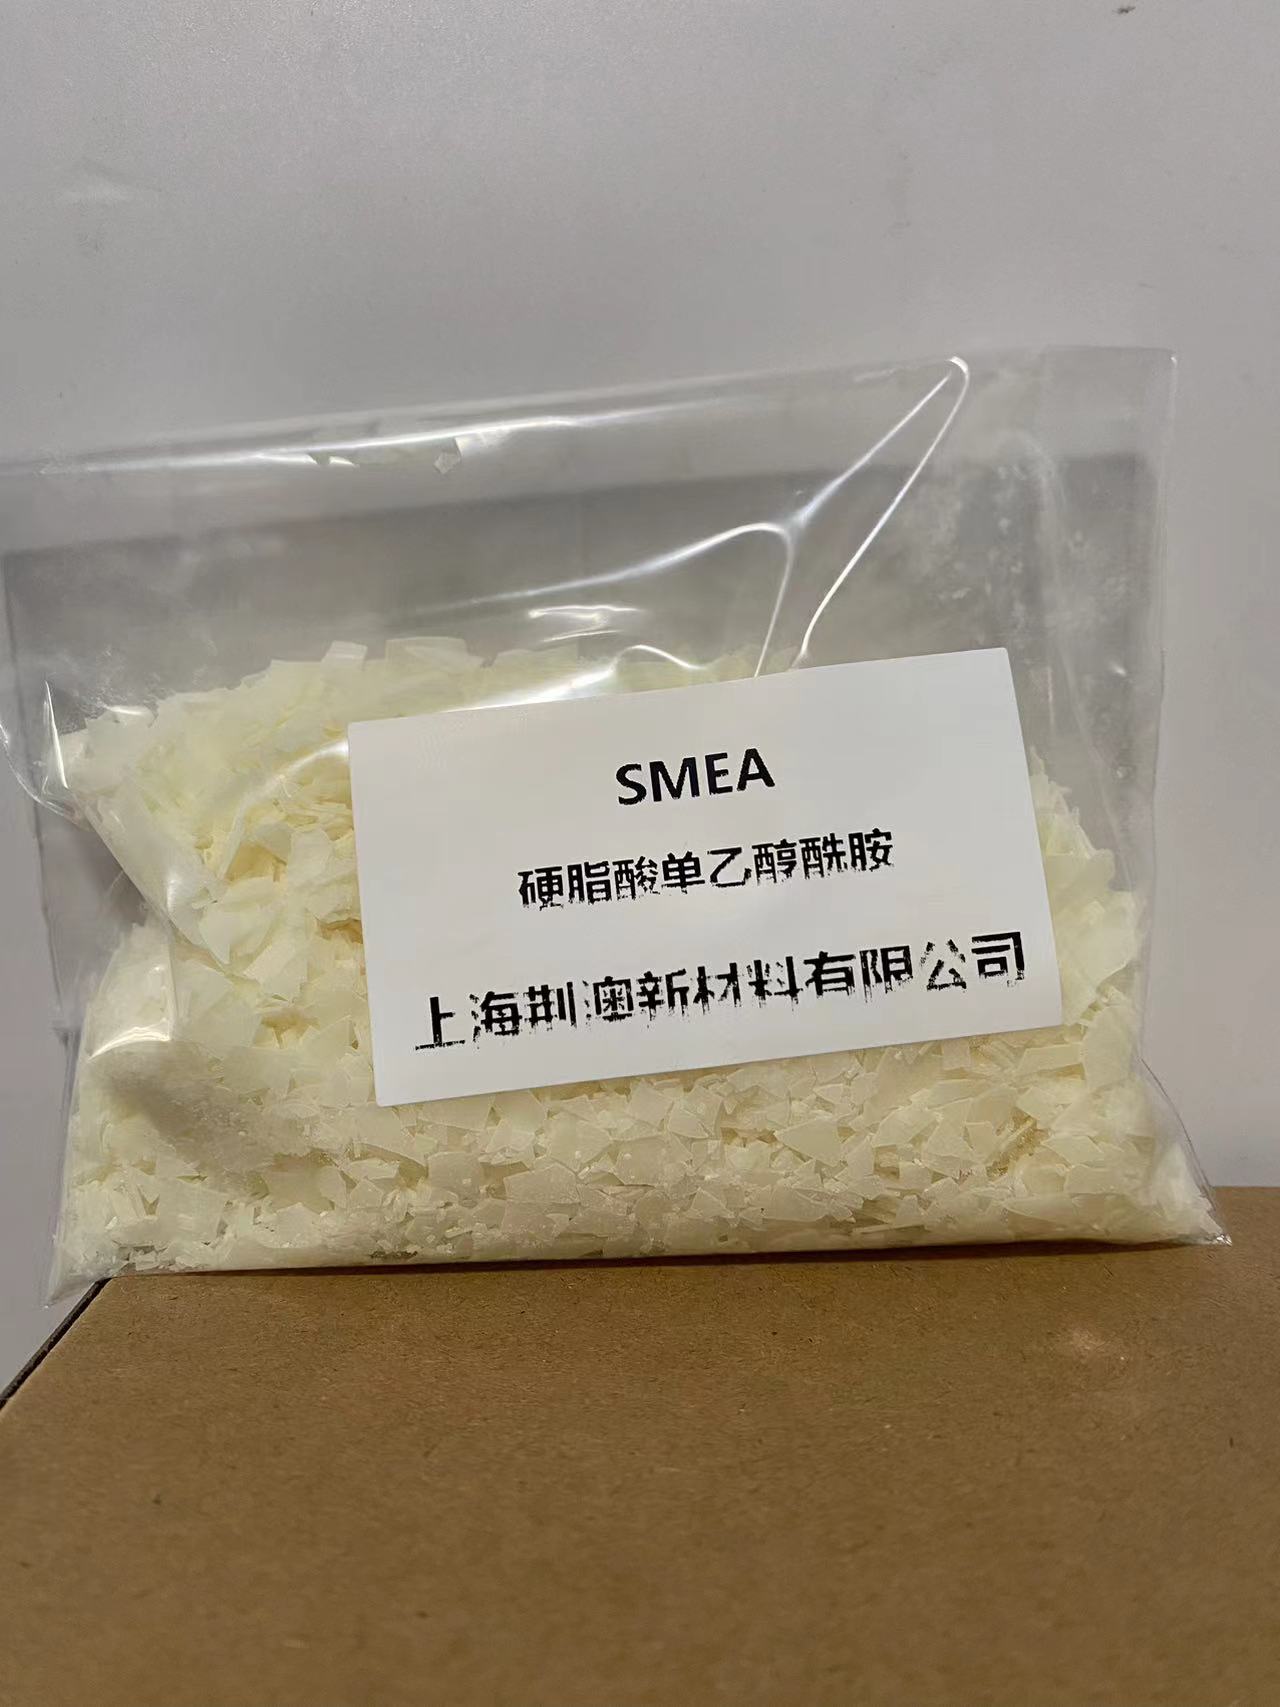 硬脂酸单乙醇酰胺 SMEA